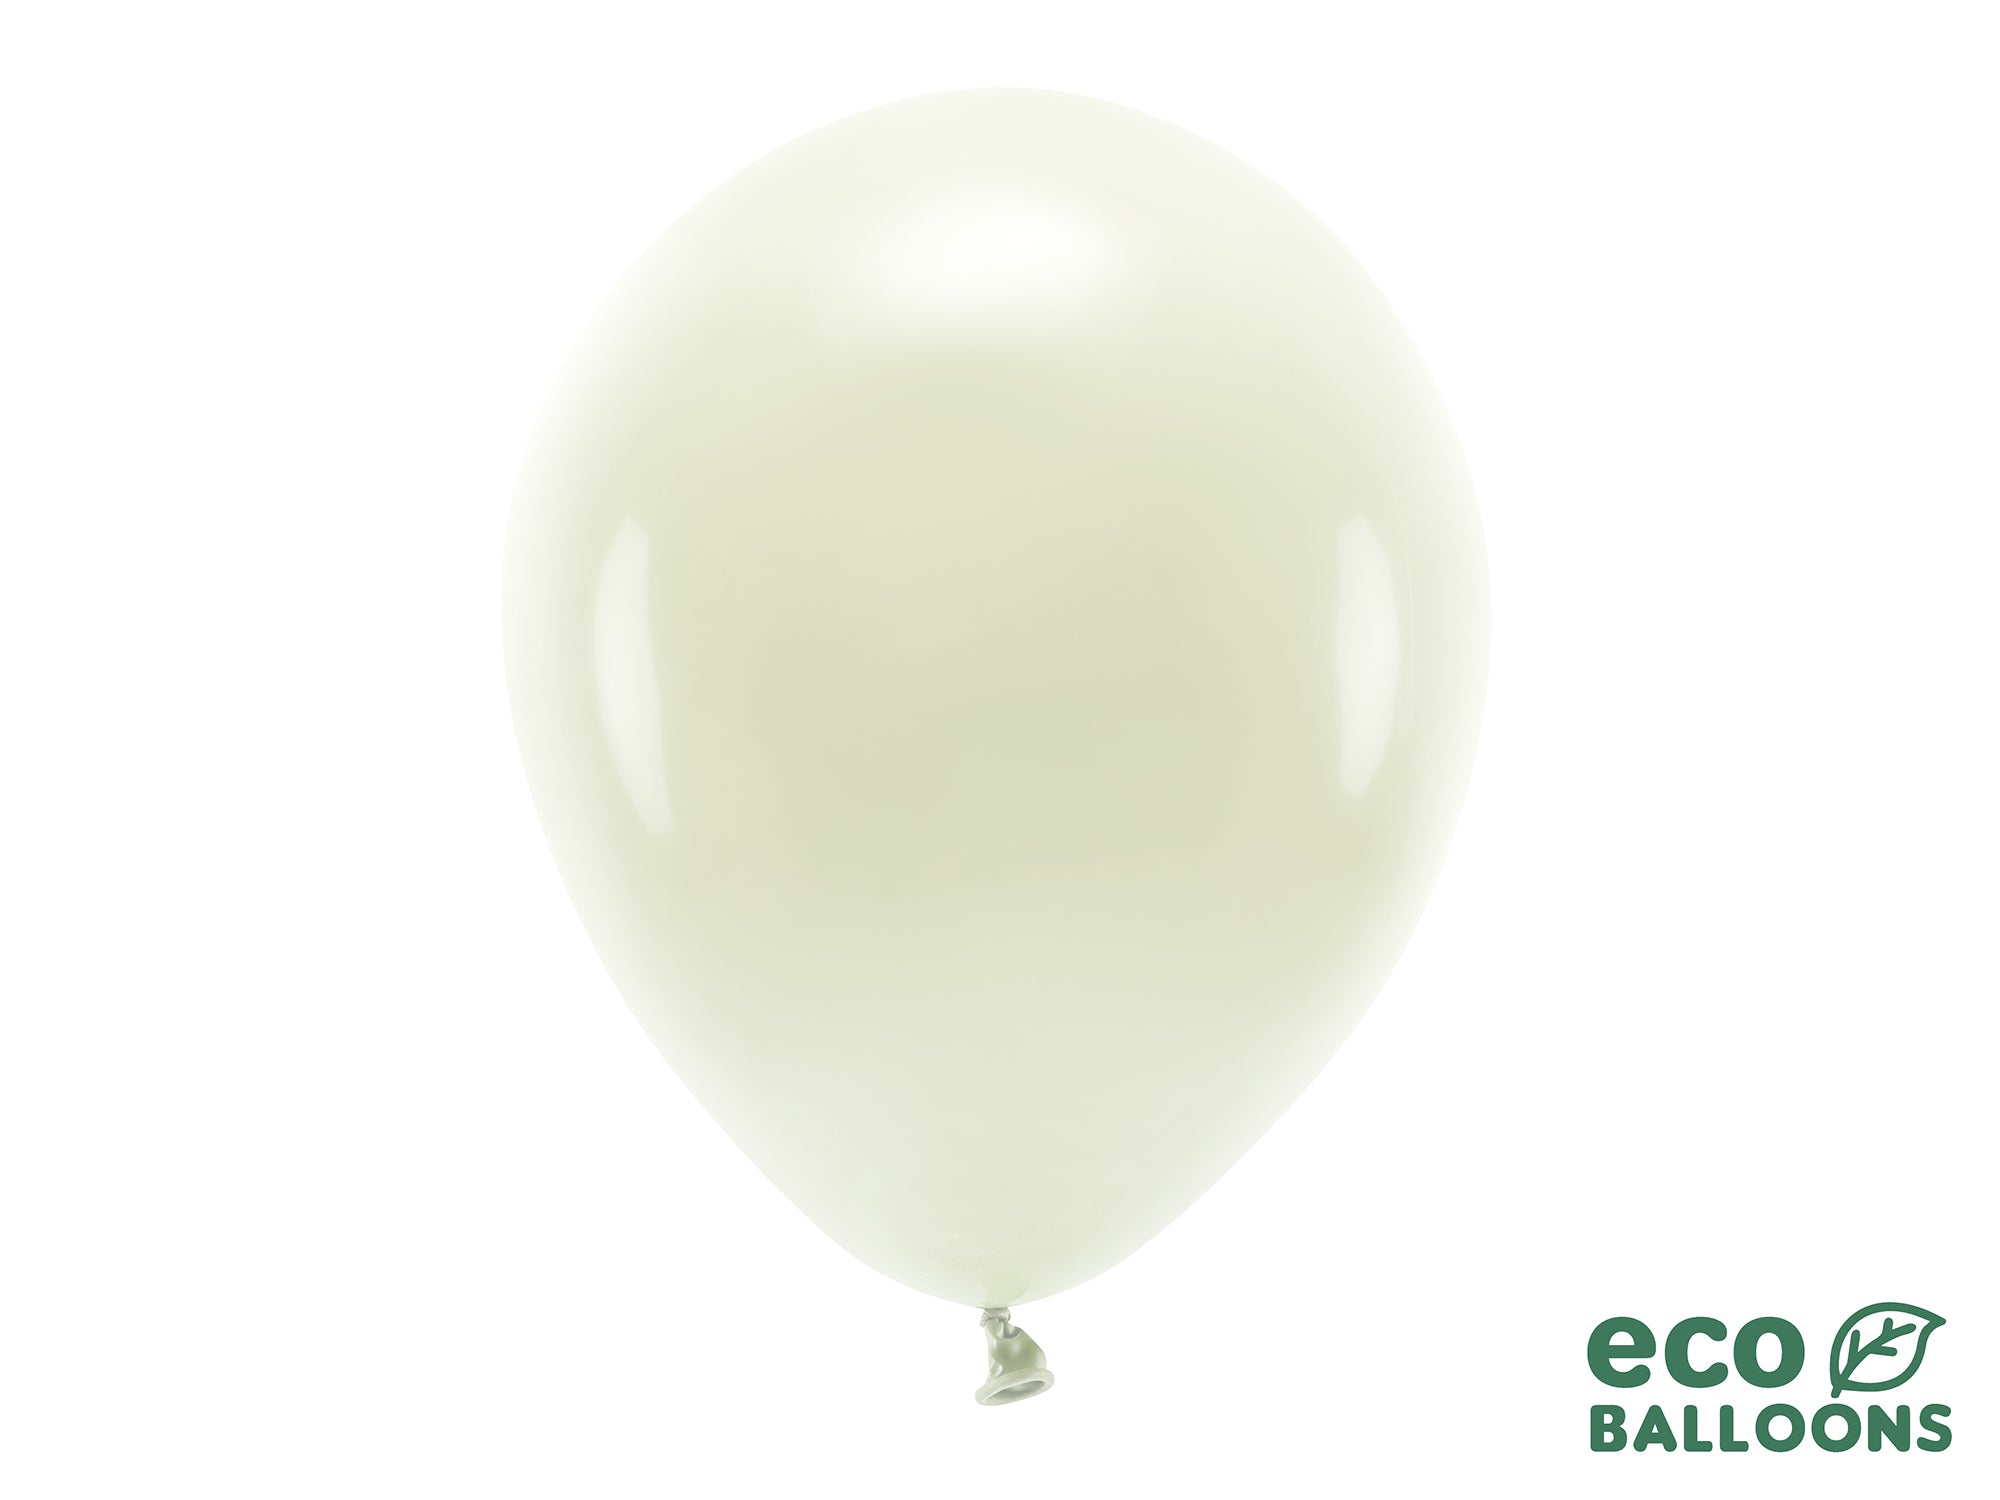 Eco friendly Balloons Cream 30cm